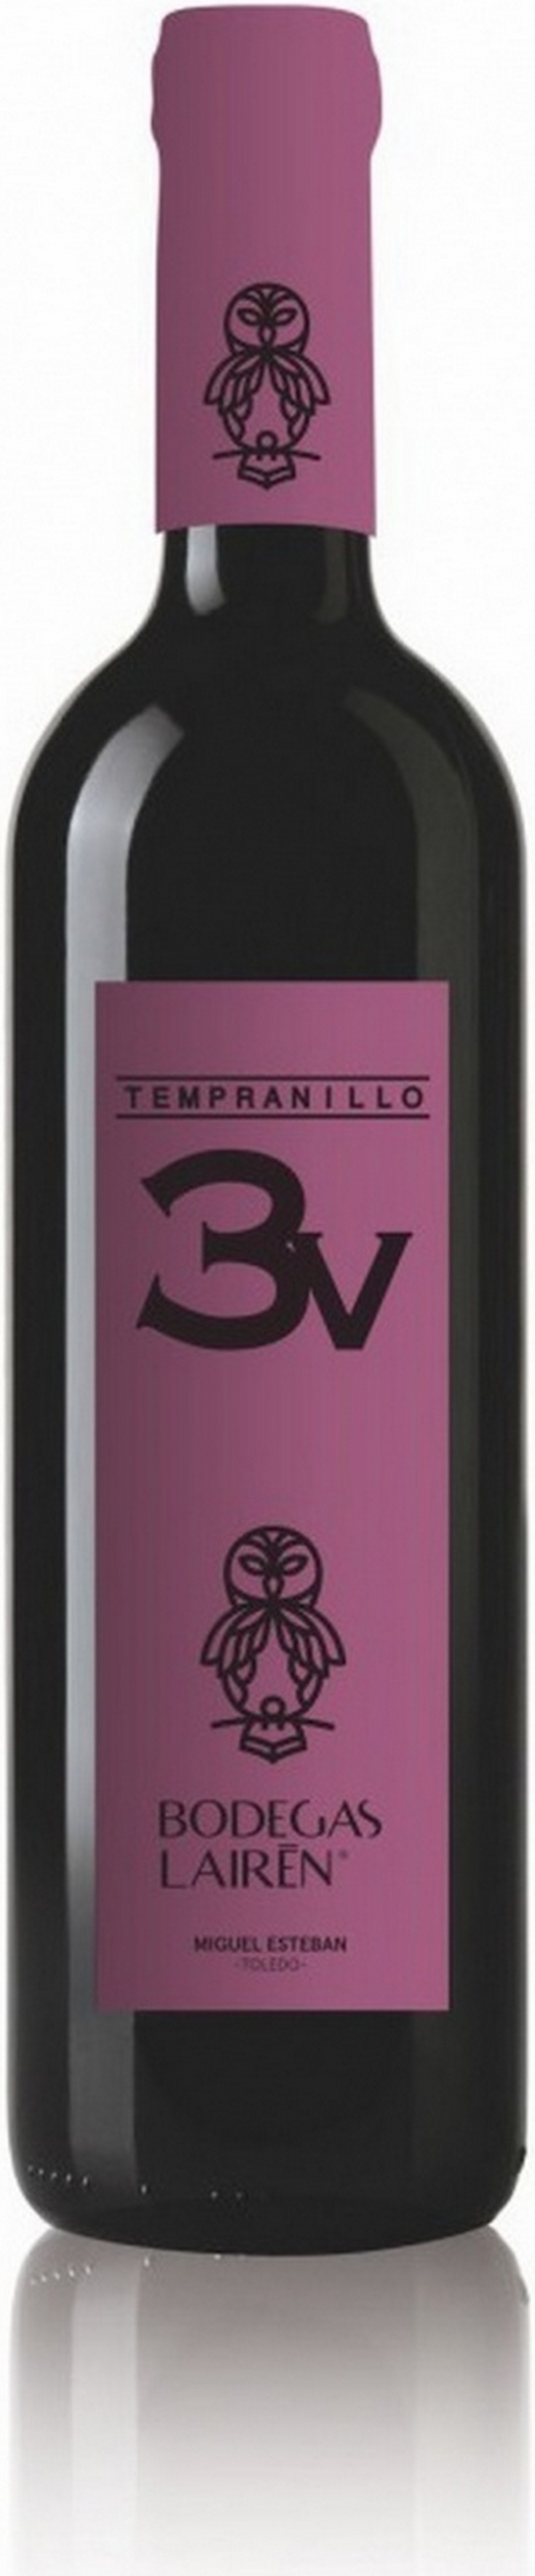 3v-tempranillo-2016